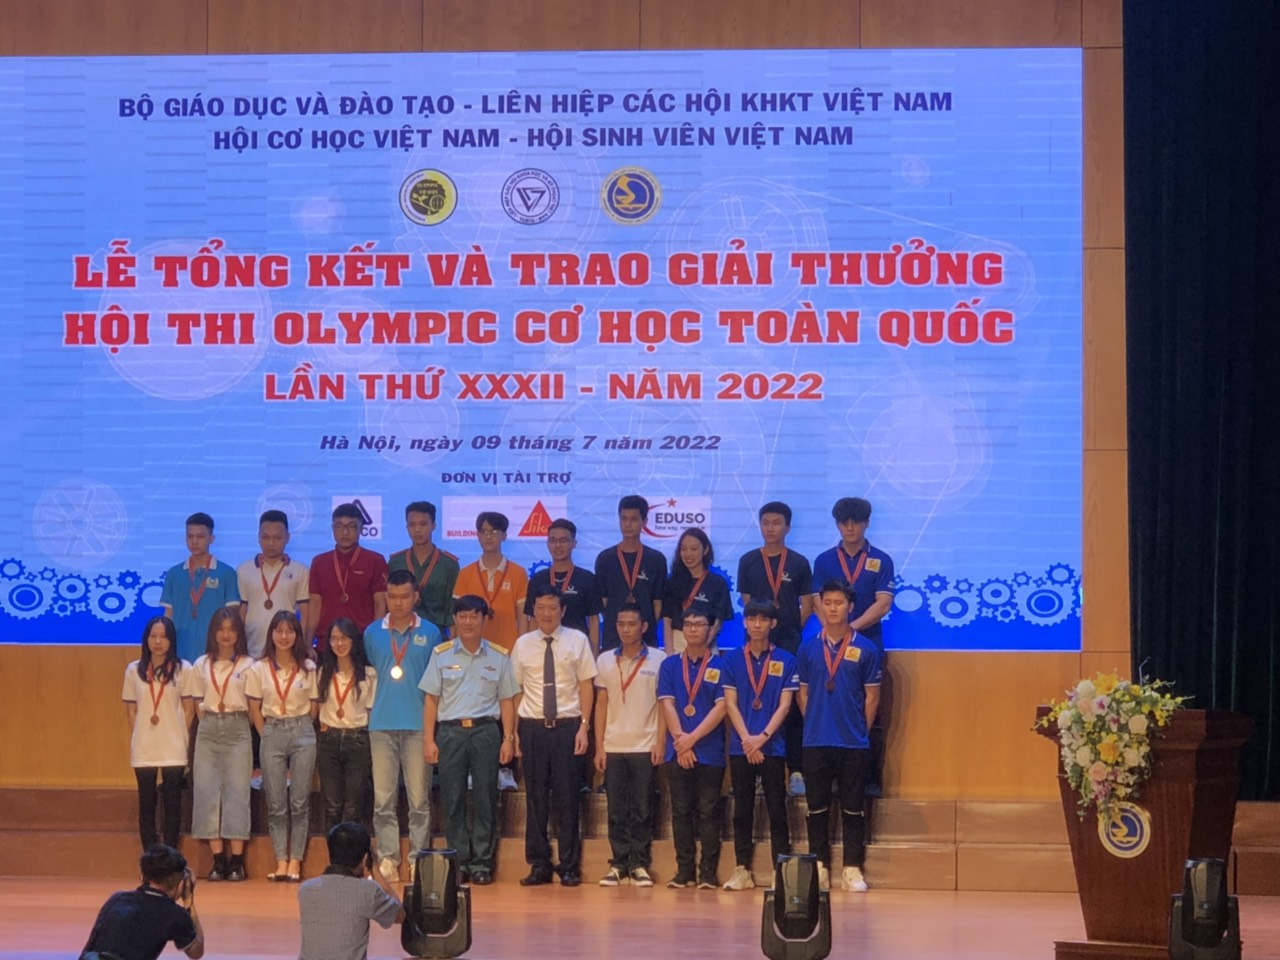 Đại học Công nghiệp Hà Nội đạt 18 giải cá nhân và 2 giải đồng đội tại Olympic Cơ học toàn quốc lần thứ 32